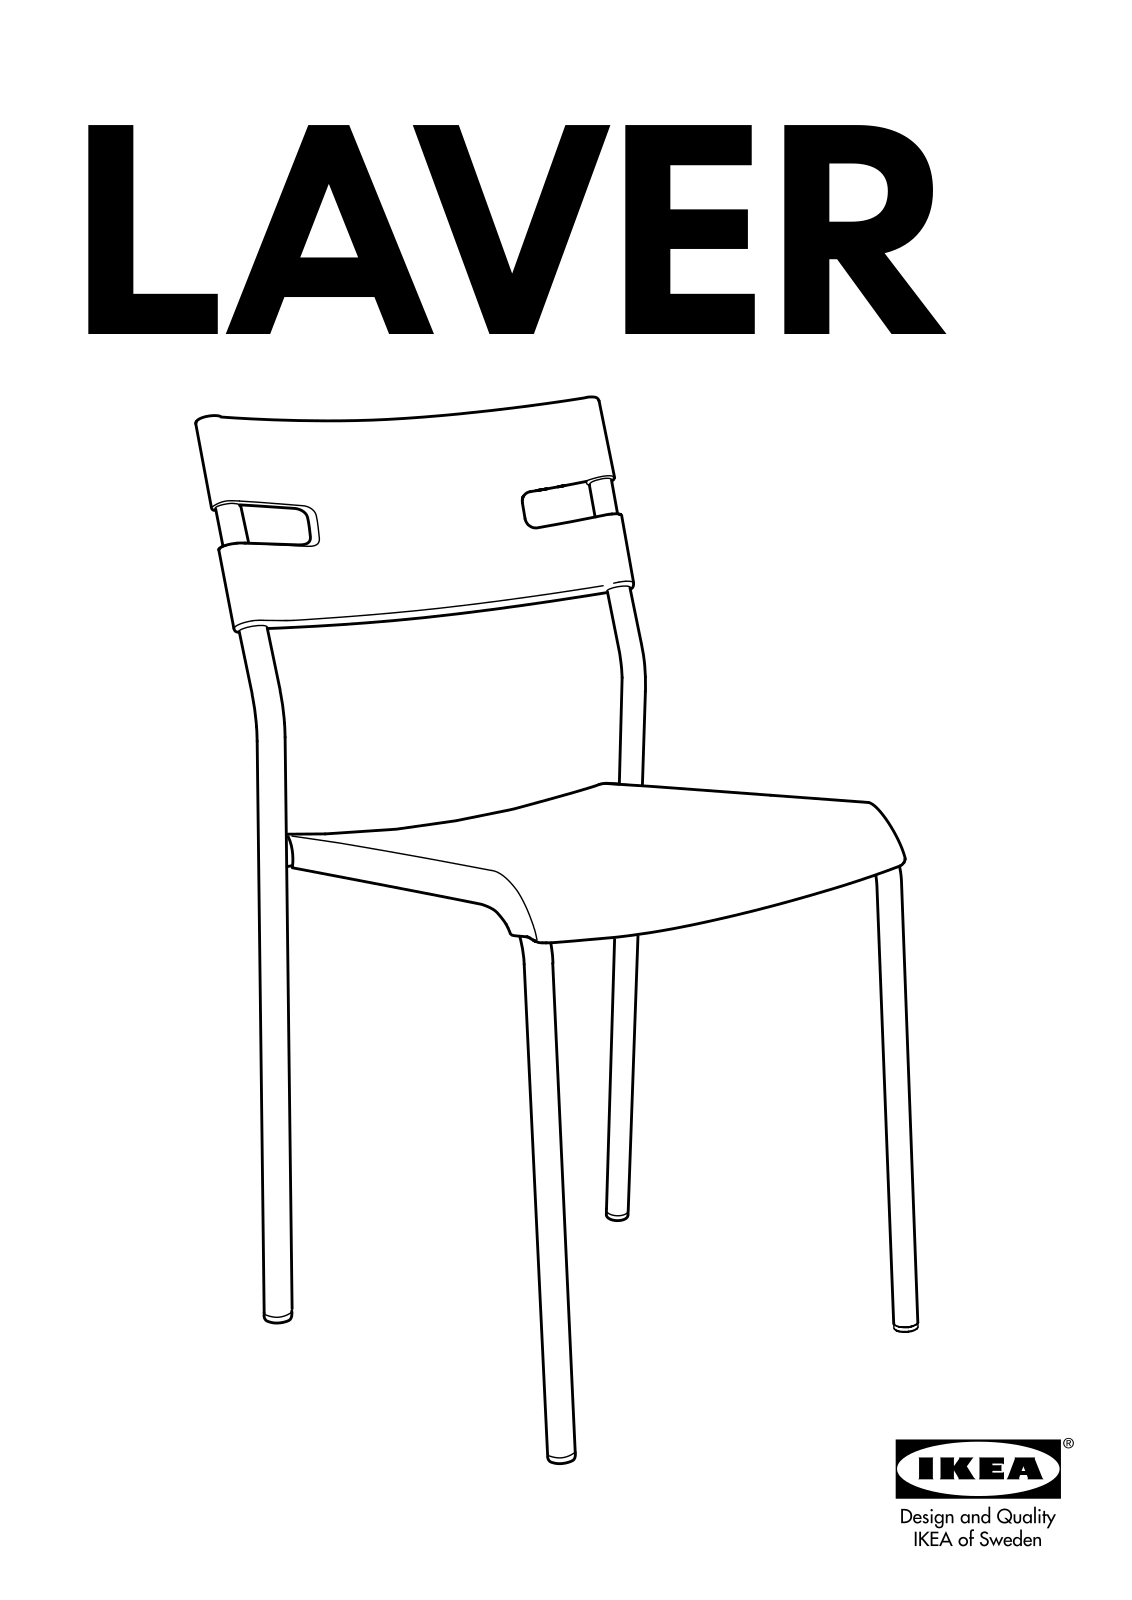 IKEA LAVER User Manual